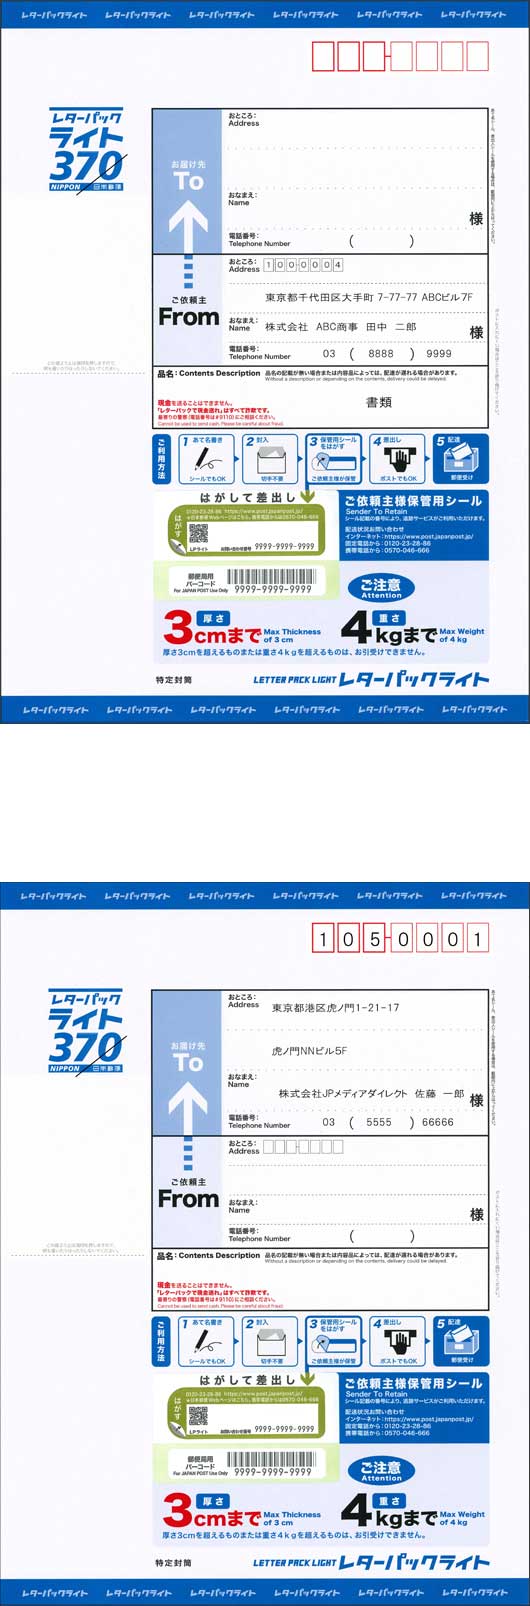 レターパック ライト 送料・印刷費込み 90,000円/箱（200枚） | レターパックの宛名印刷・定期購入サービス